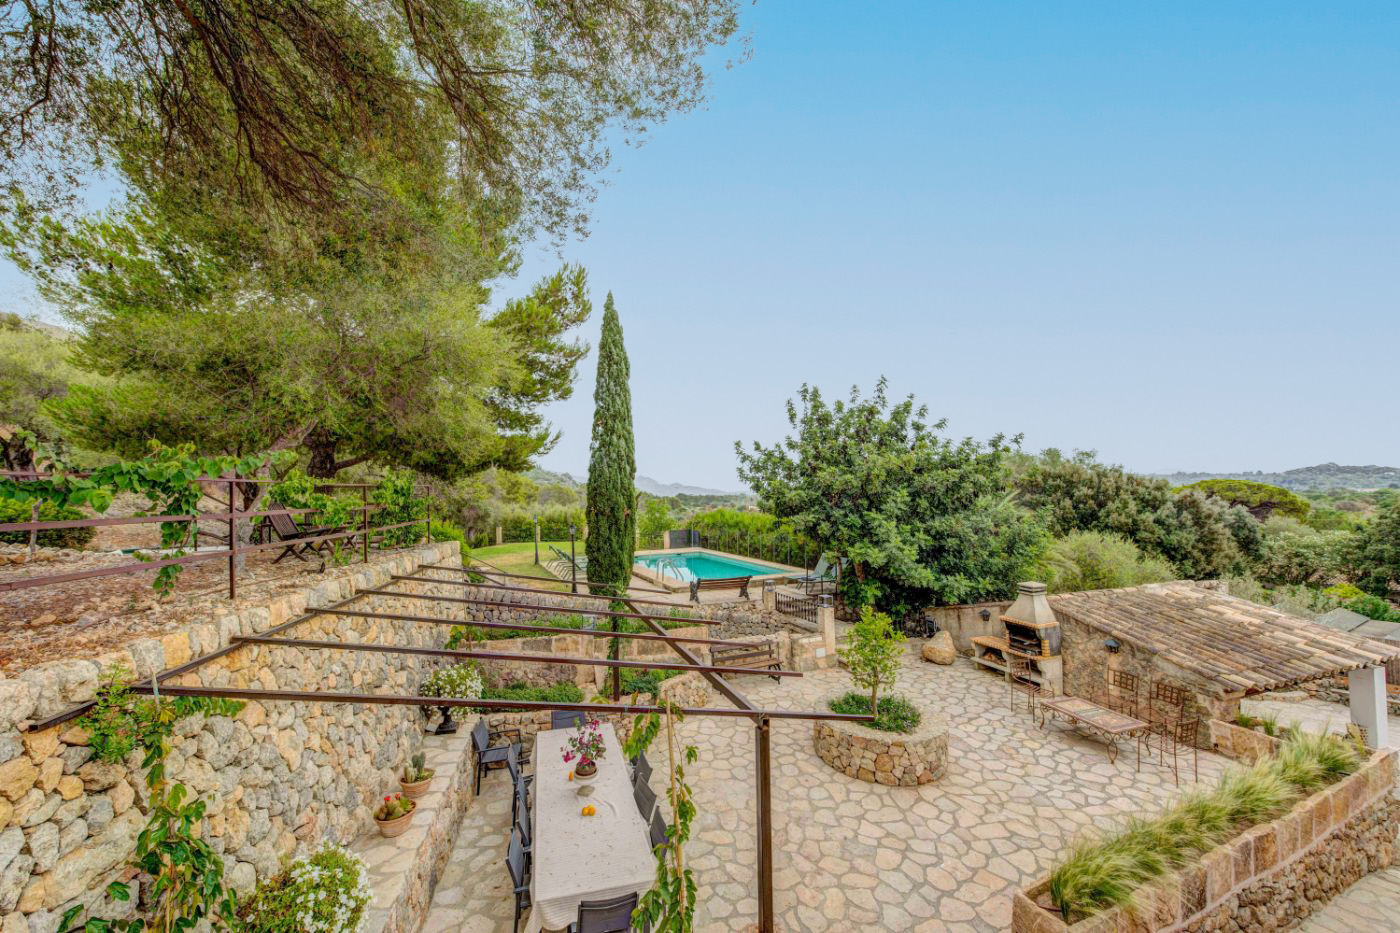 Garden and dining terrace at Villa Esplendor